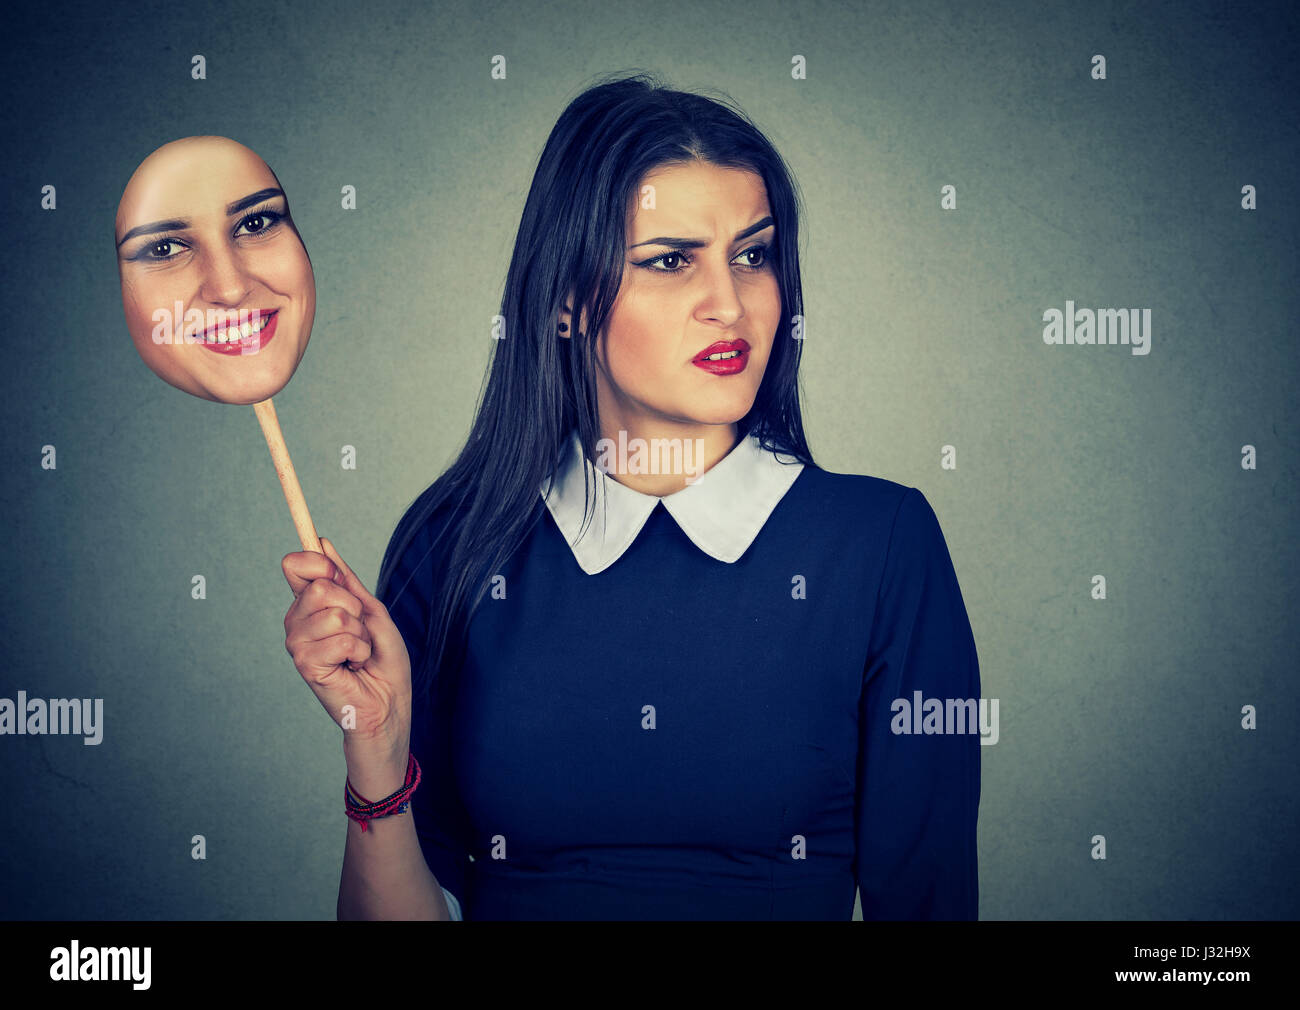 Junge Frau mit angewidert traurigen Ausdruck hält eine Maske mit dem Ausdruck ihrer Fröhlichkeit Stockfoto